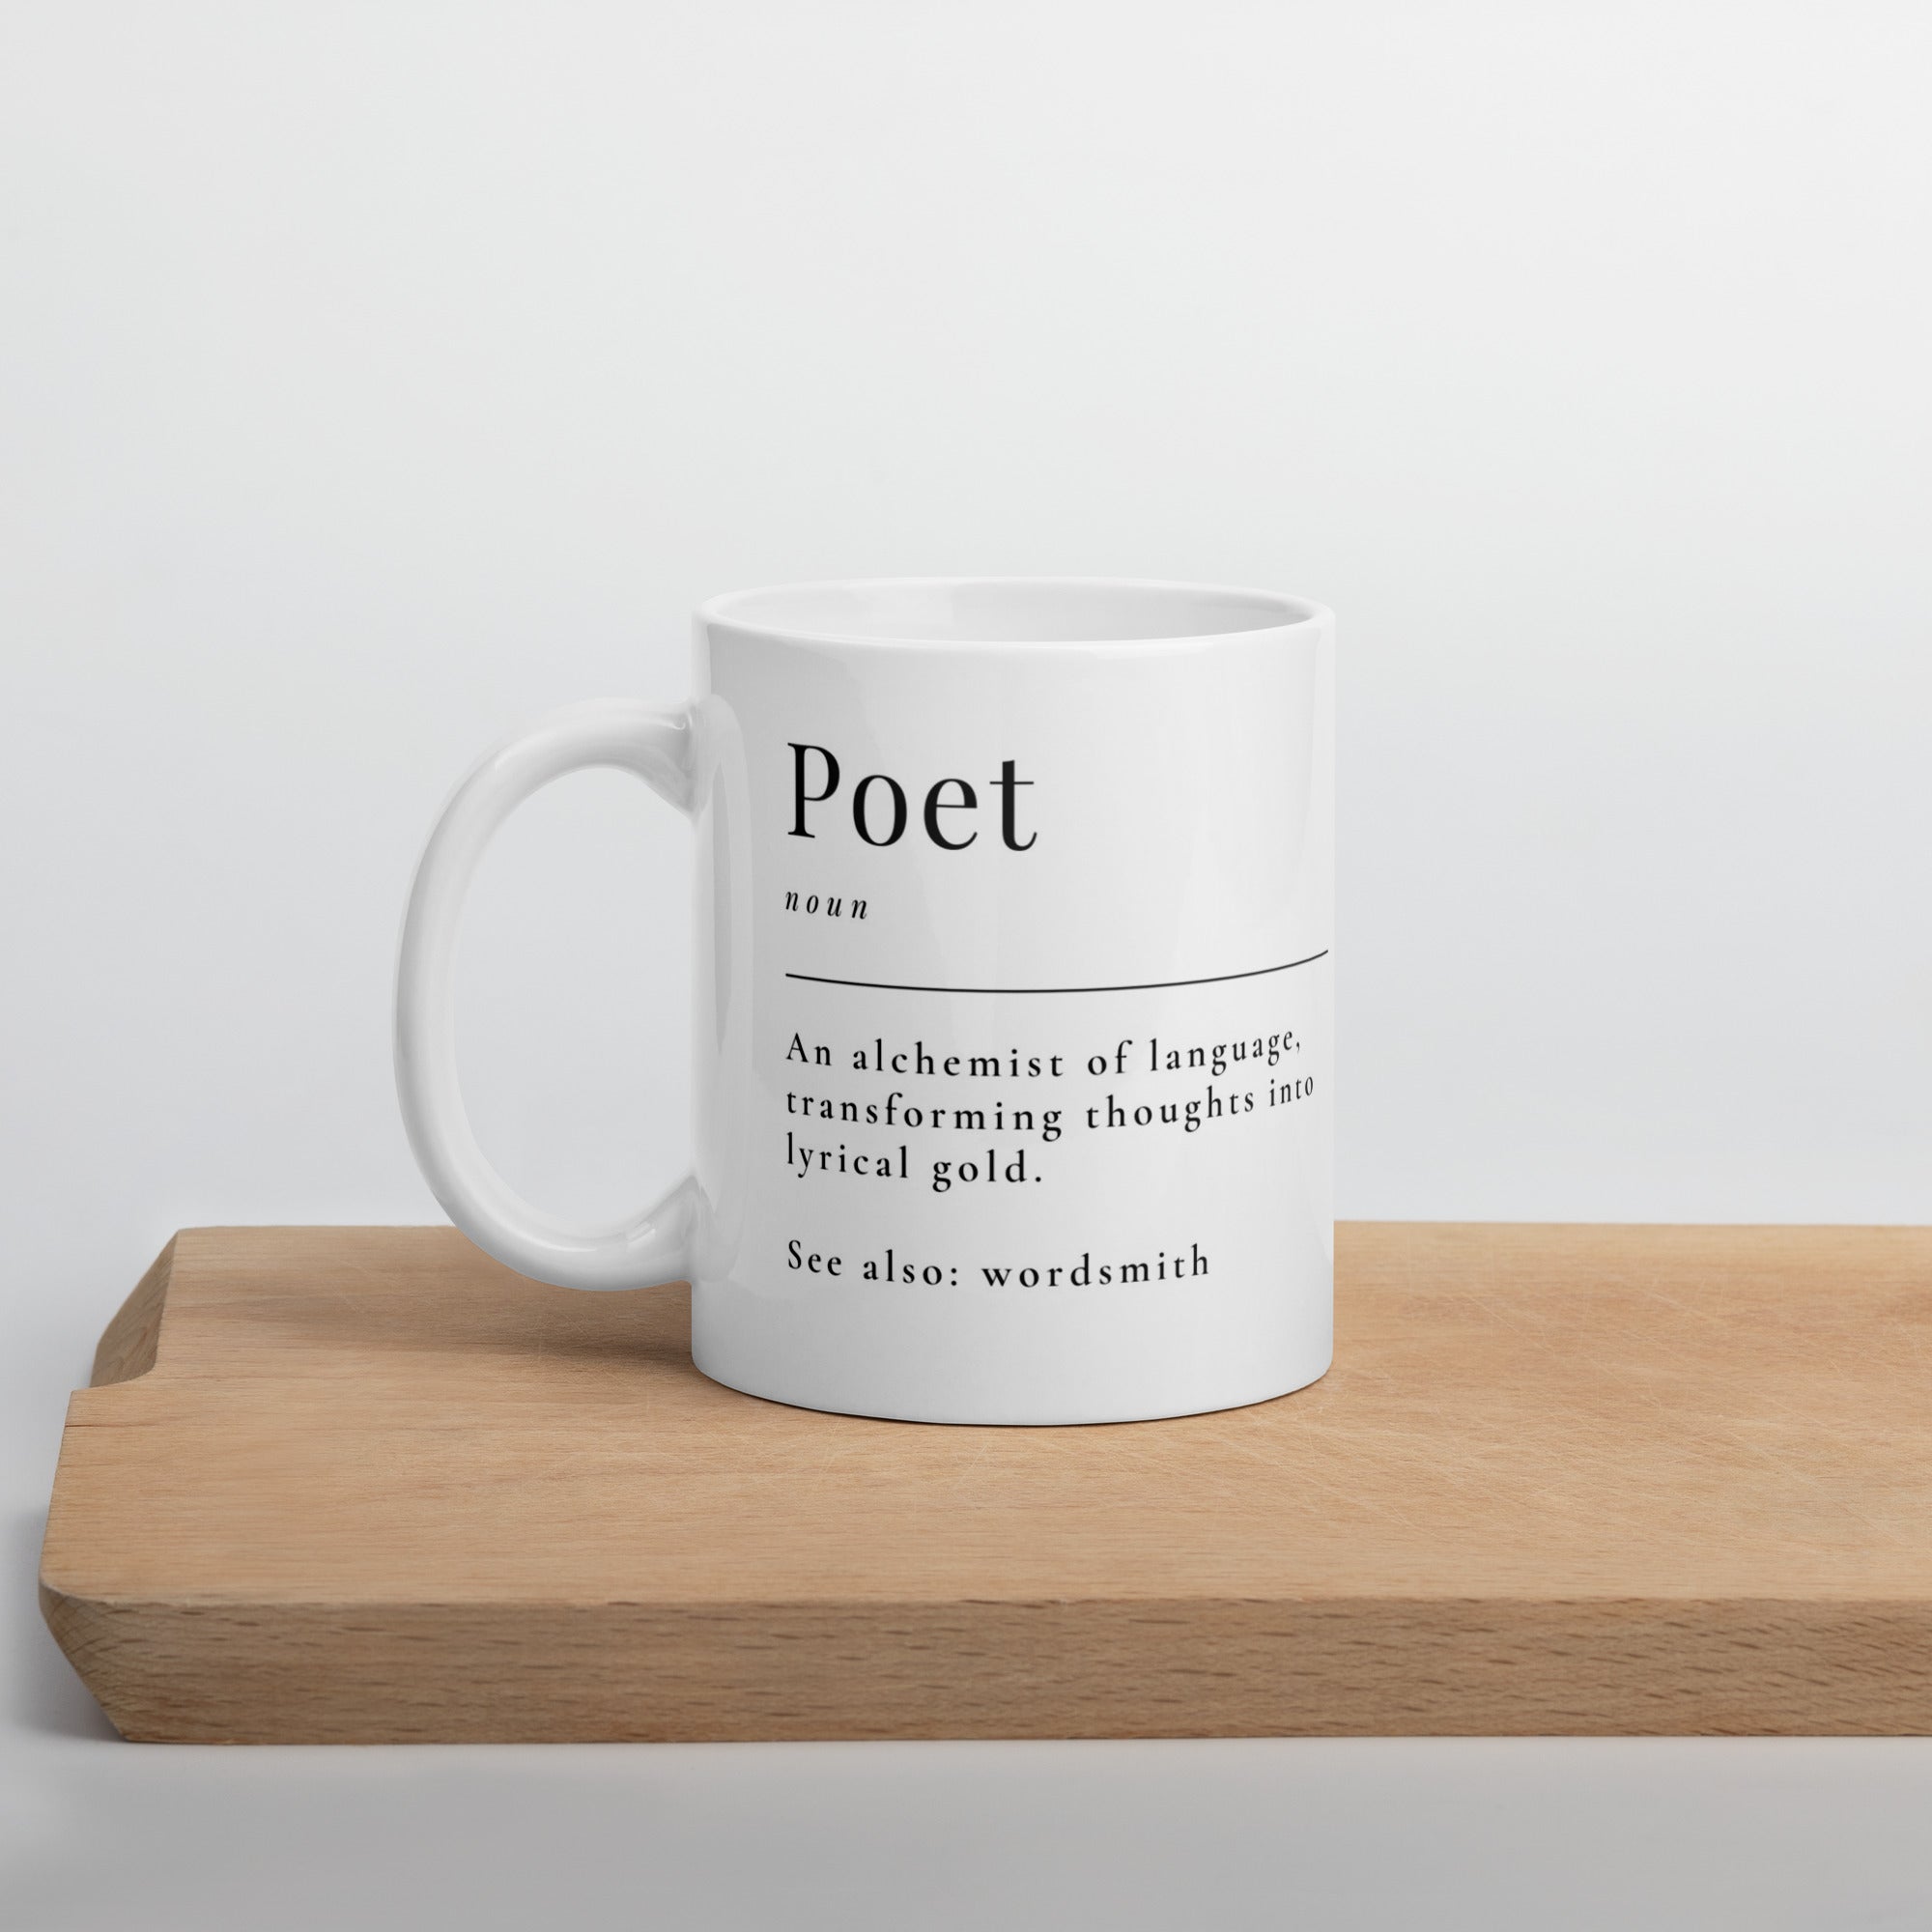 Poet Alchemist of Language: Glossy Mug